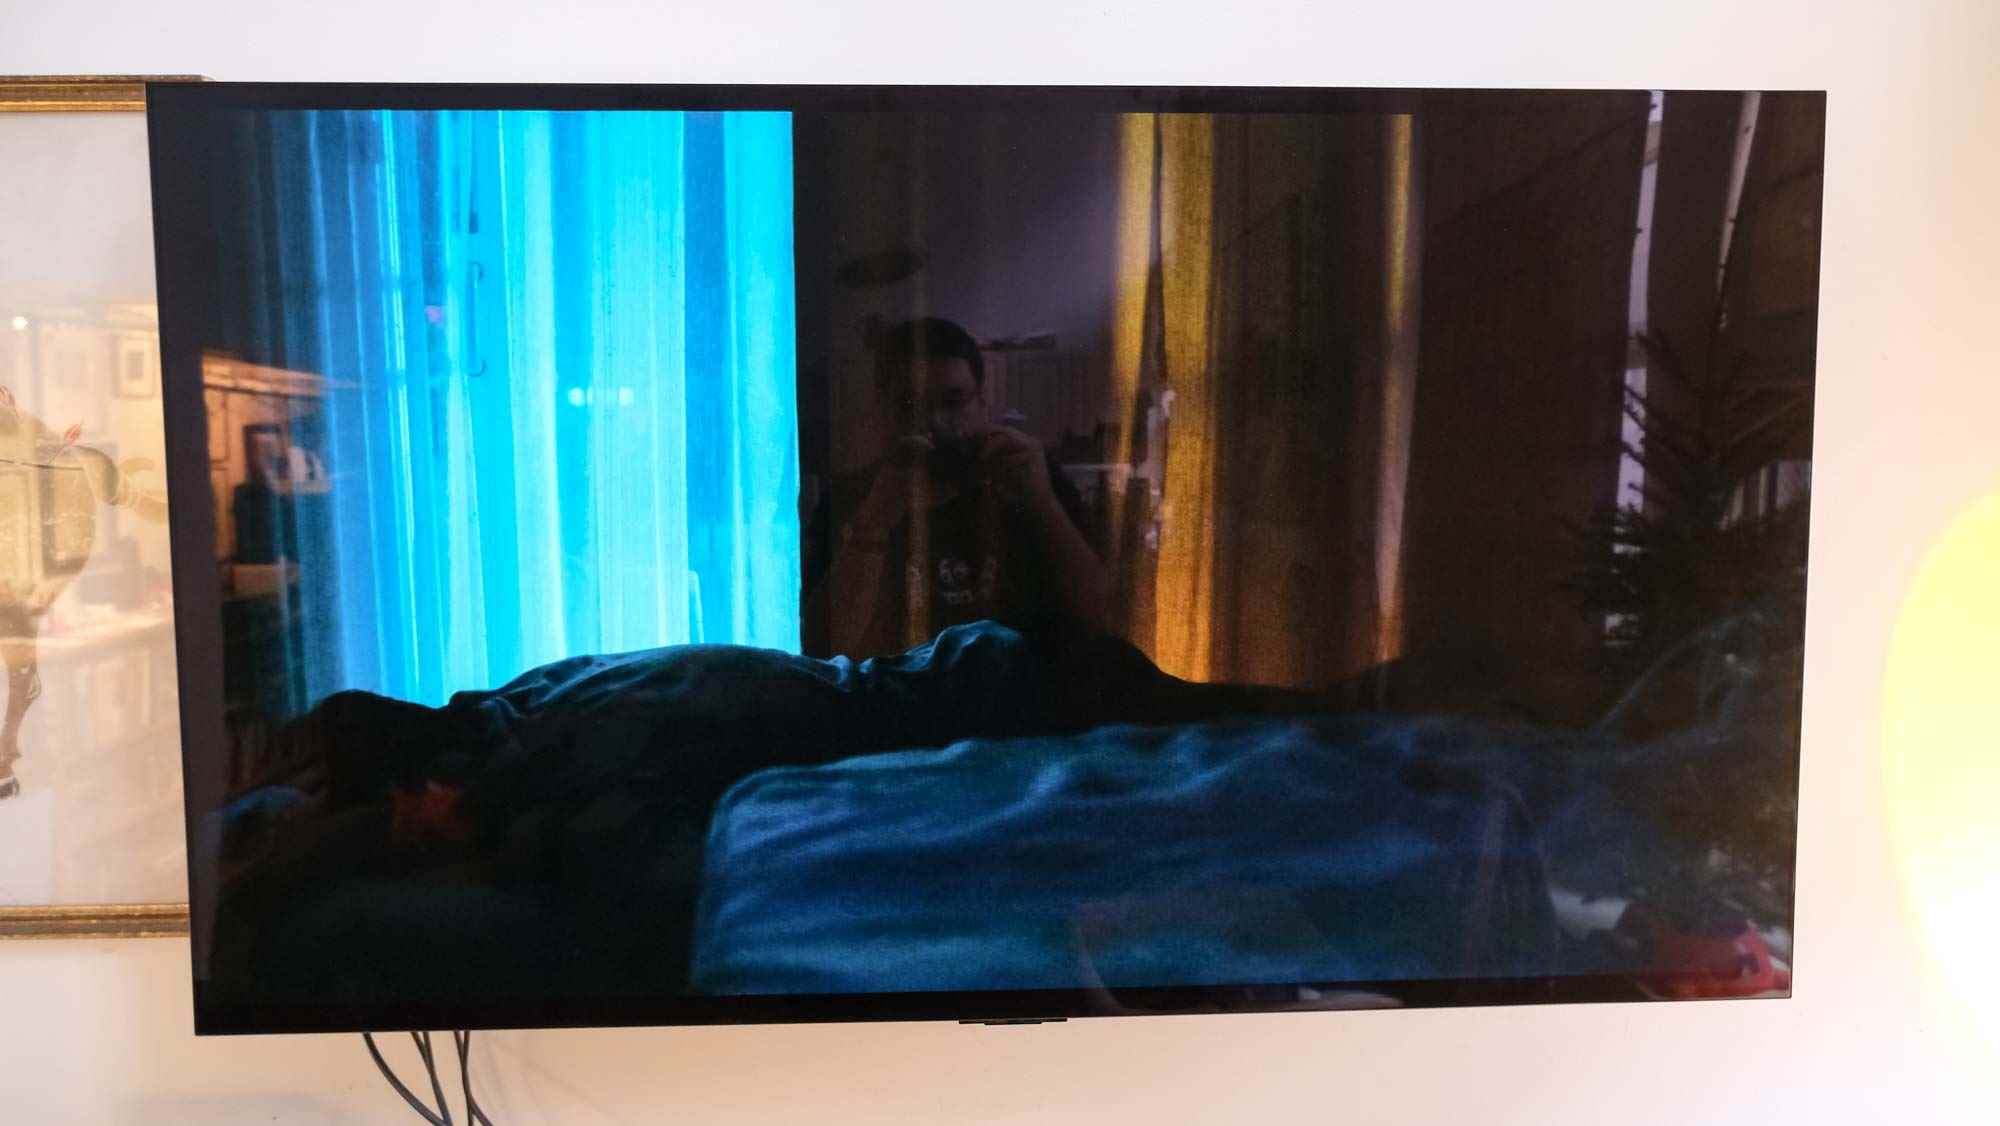 LG C2 OLED TV'de Aftersun filmi gösterilirken ekranın sağ tarafında parlama var